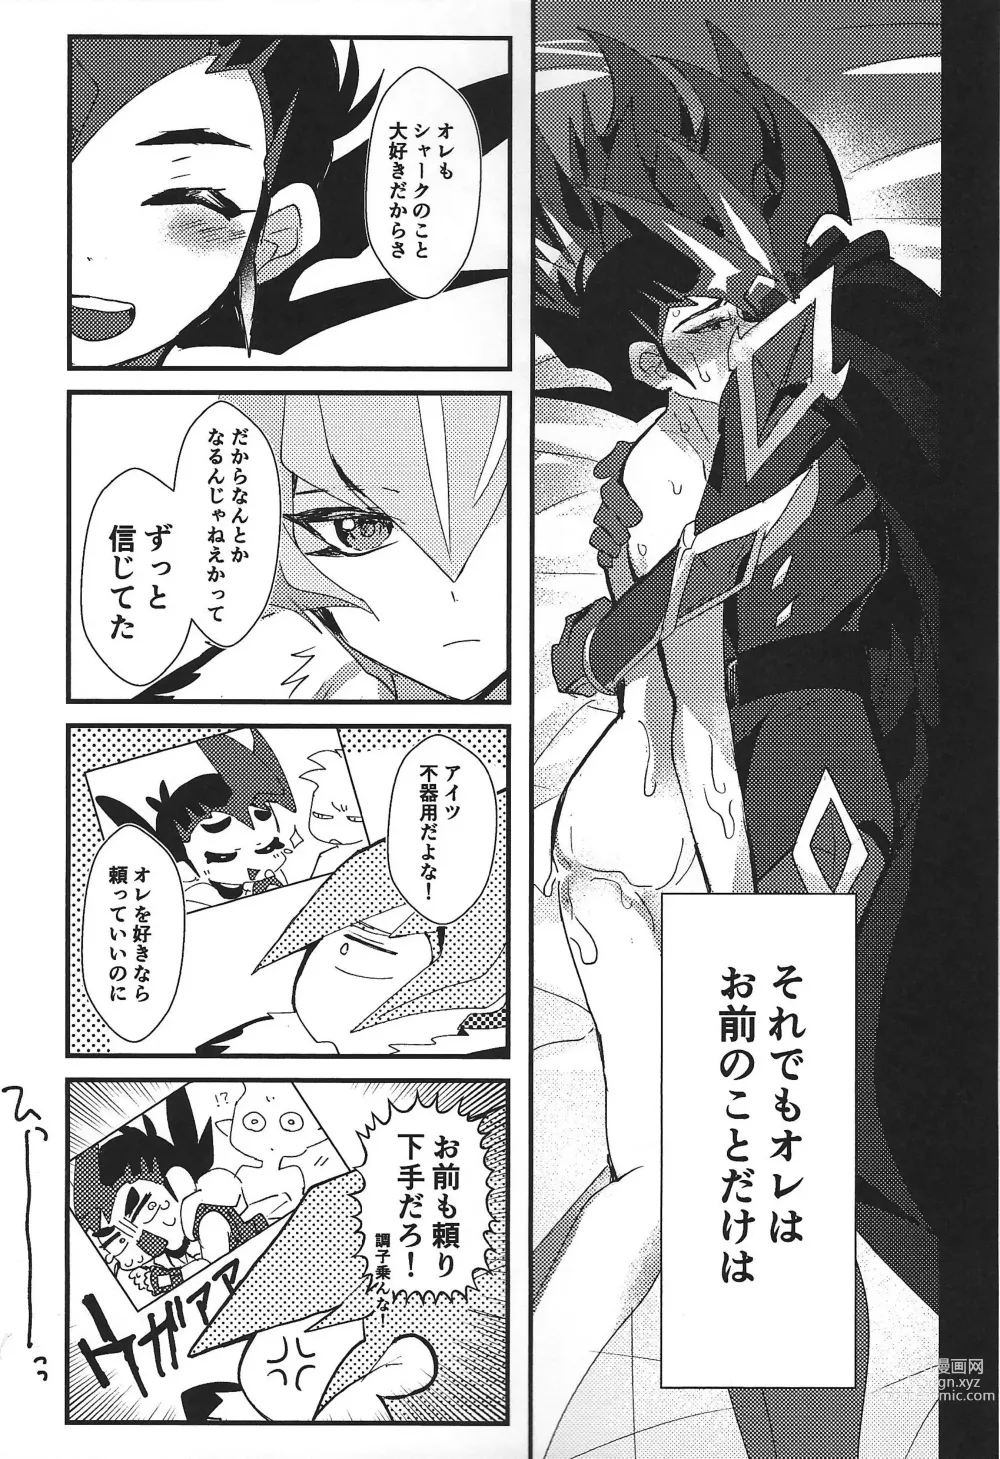 Page 111 of doujinshi ChaosPhantasma